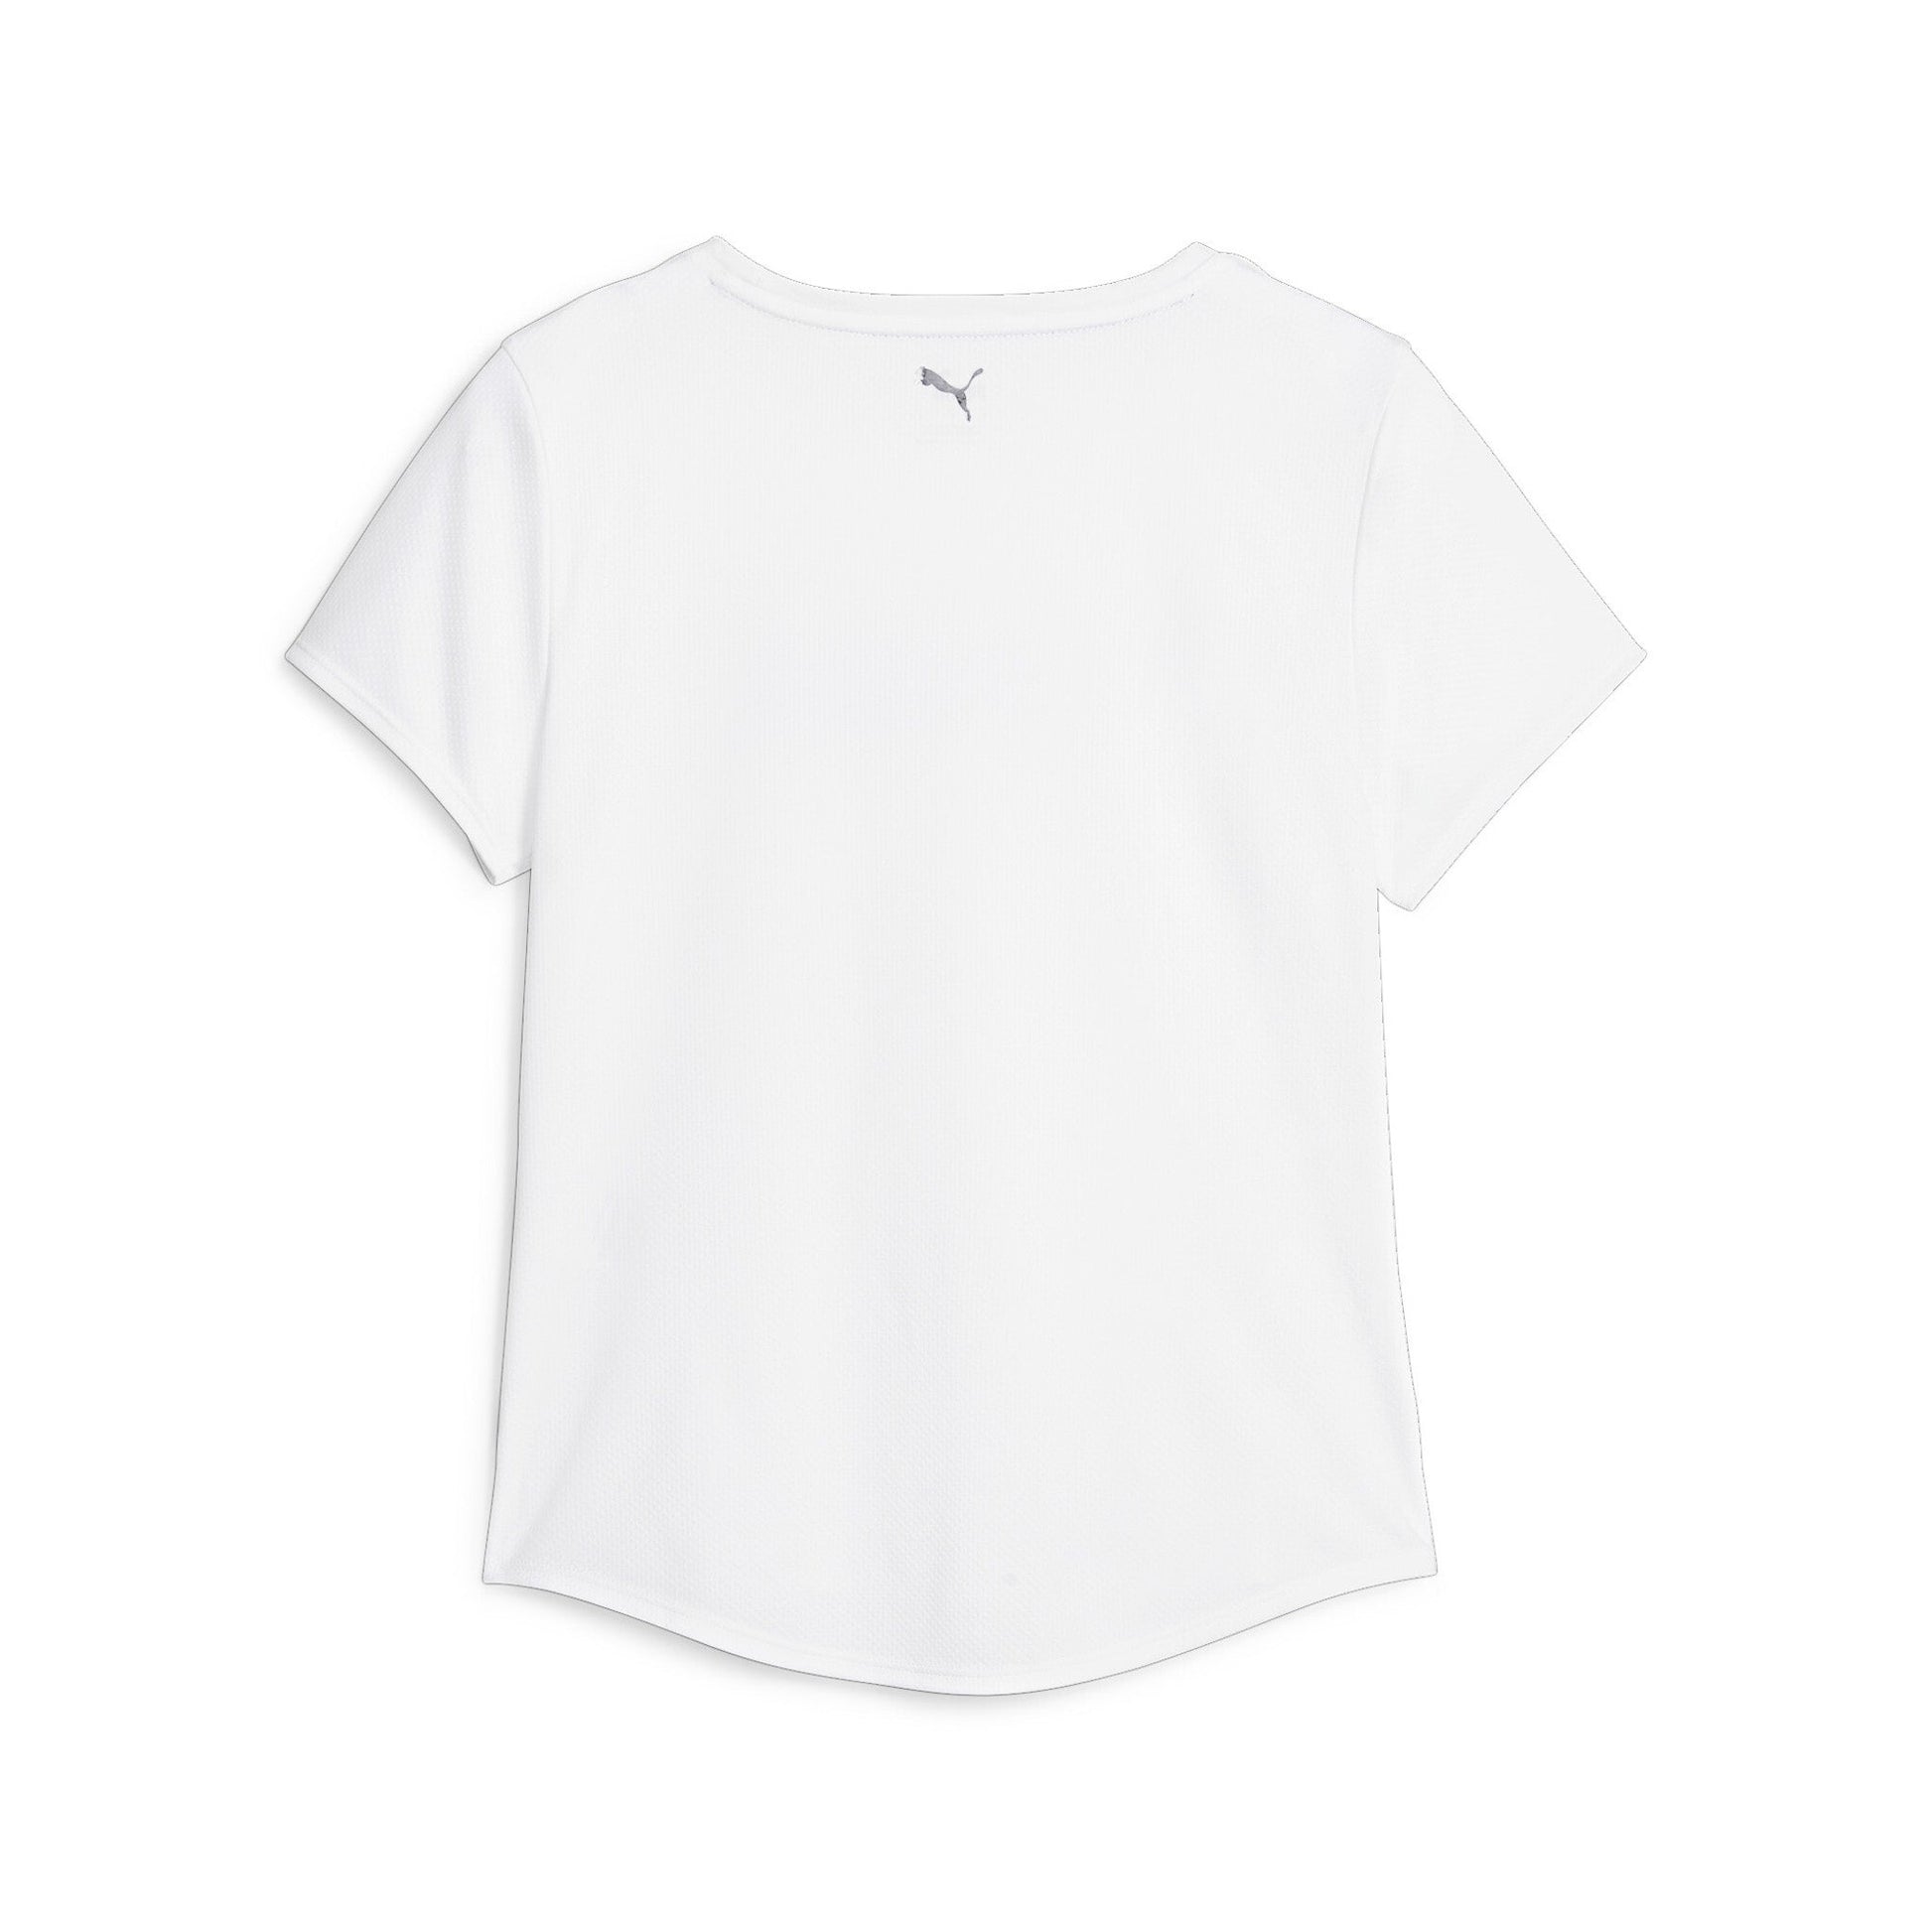 PUMA - חולצה לנשים PUMA FIT LOGO ULTRAB בצבע לבן - MASHBIR//365